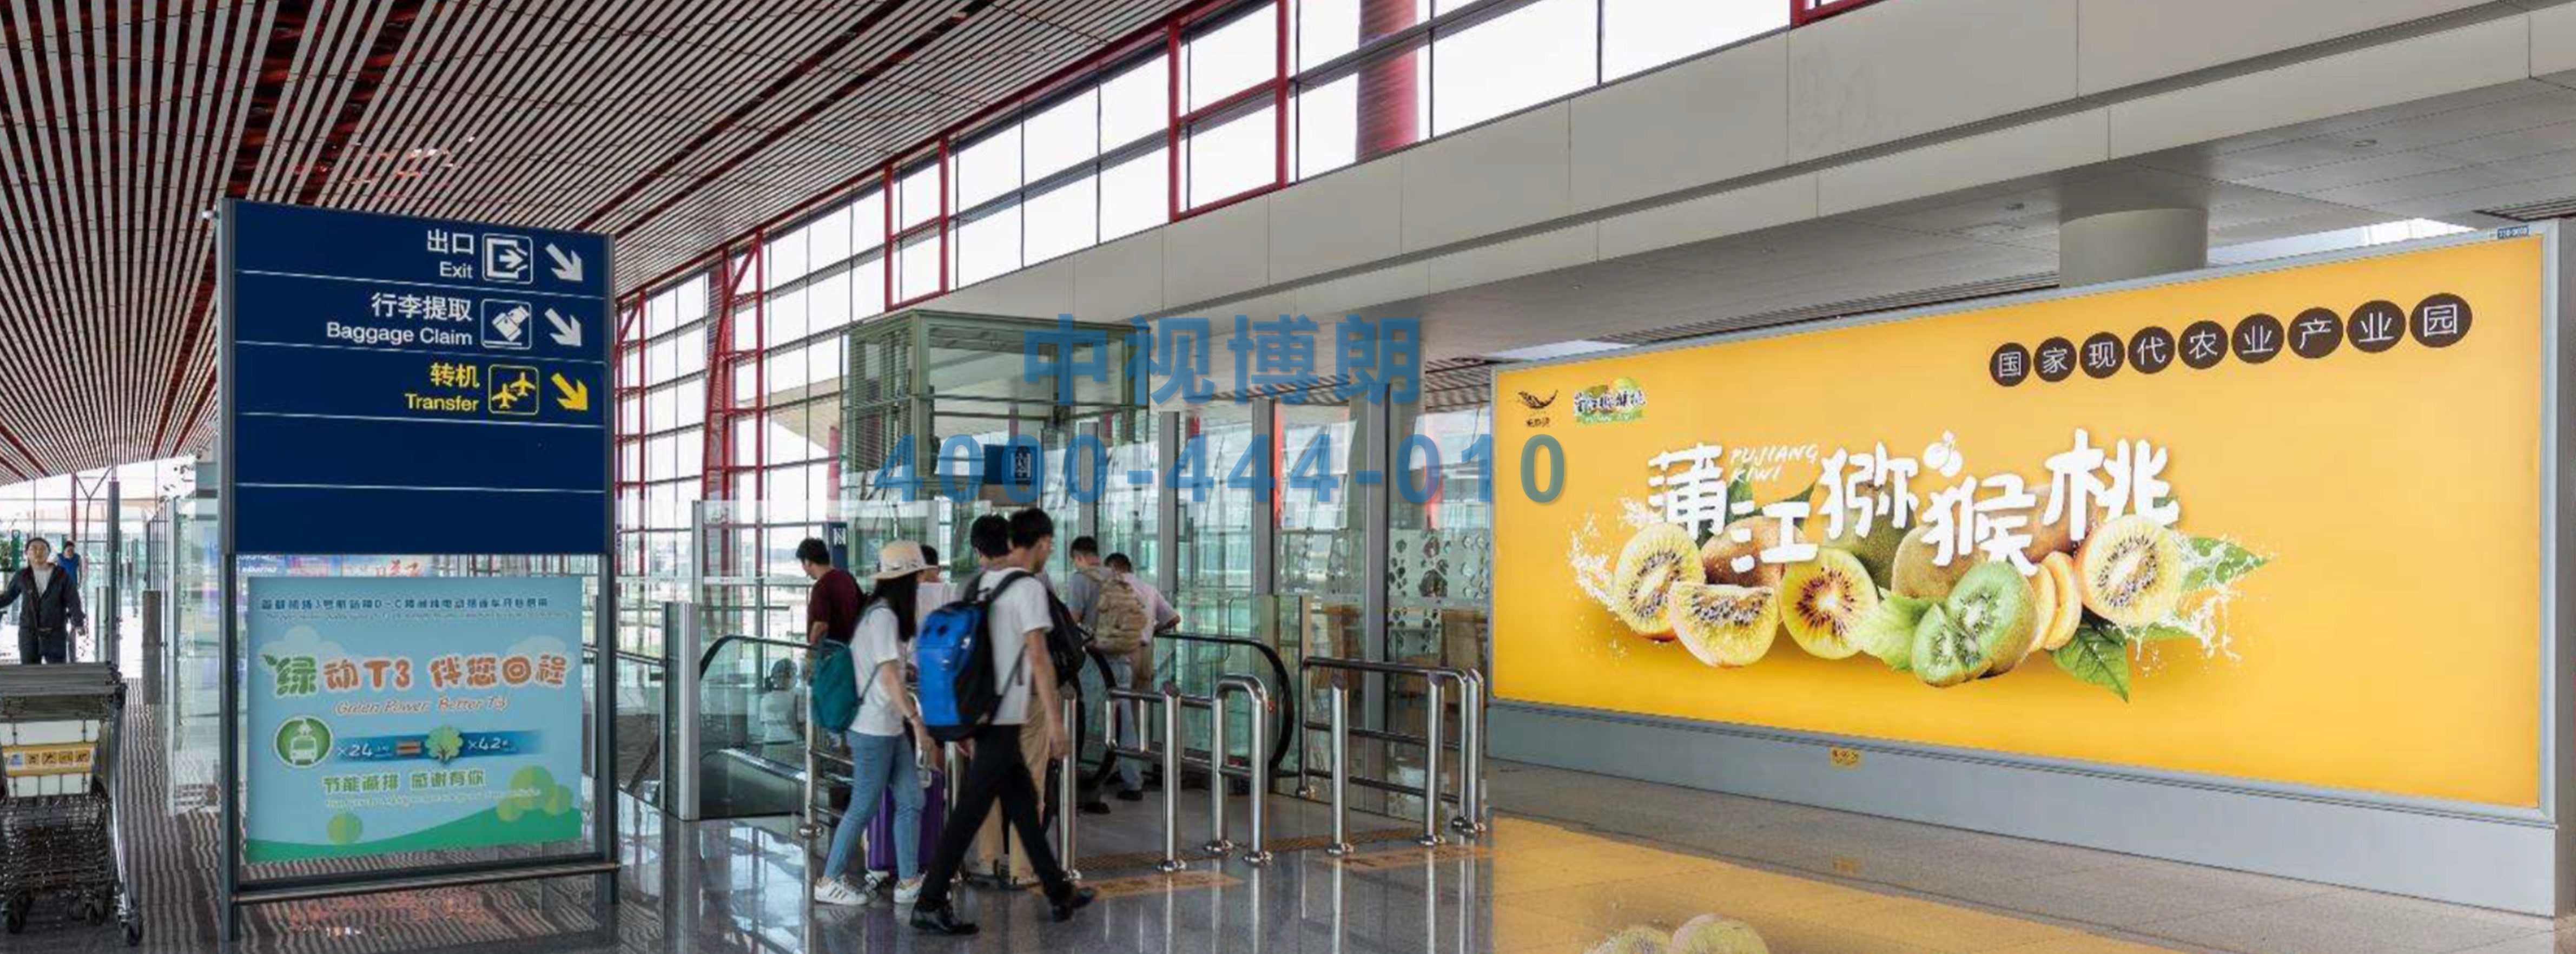 北京首都机场广告-T3D到达汇集口成对落地灯箱